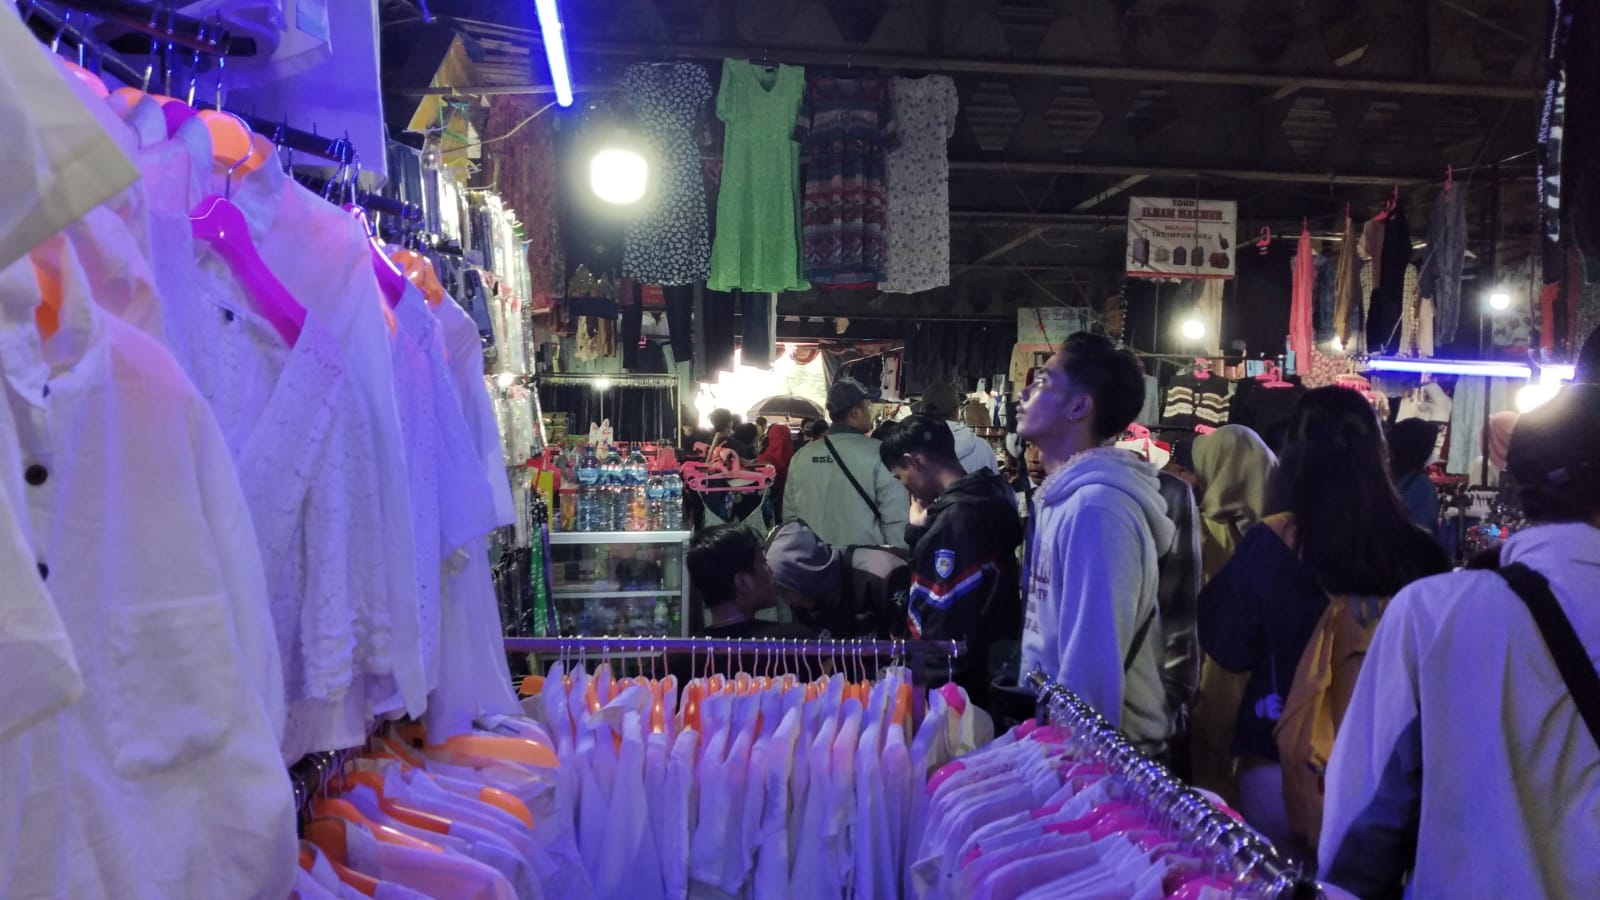 Jelang Lebaran Pasar Cimol Gedebage Dipadati Pengunjung